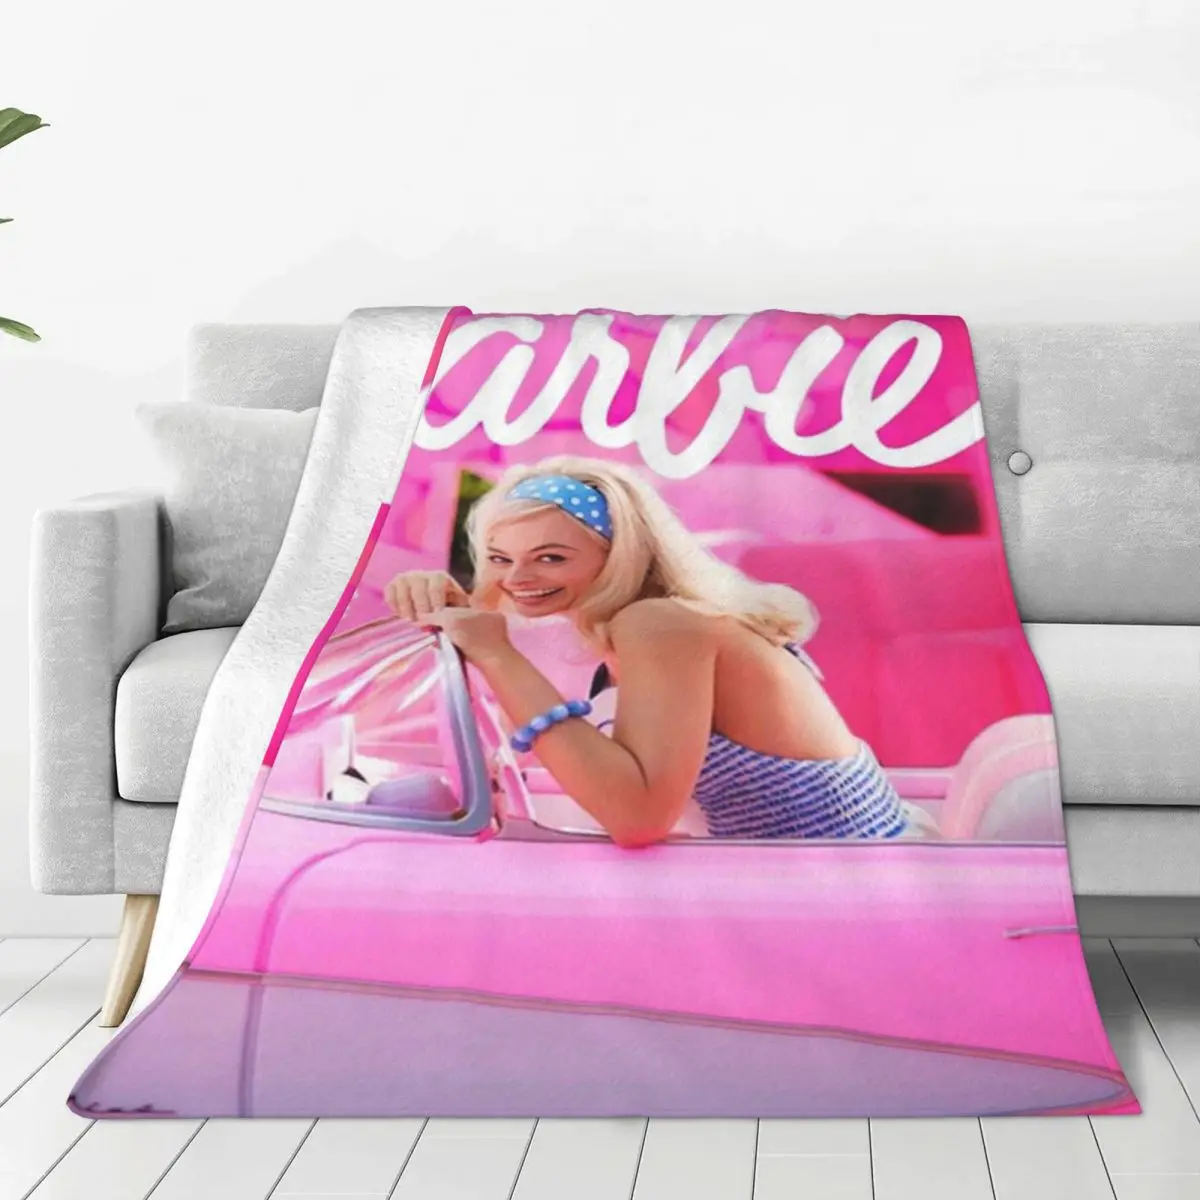 

Розовая кукла, оригинальное украшение, Райан Гослинг, Марго Робби, портативное мягкое покрывало для домашнего кушетки, плюшевое тонкое одеяло